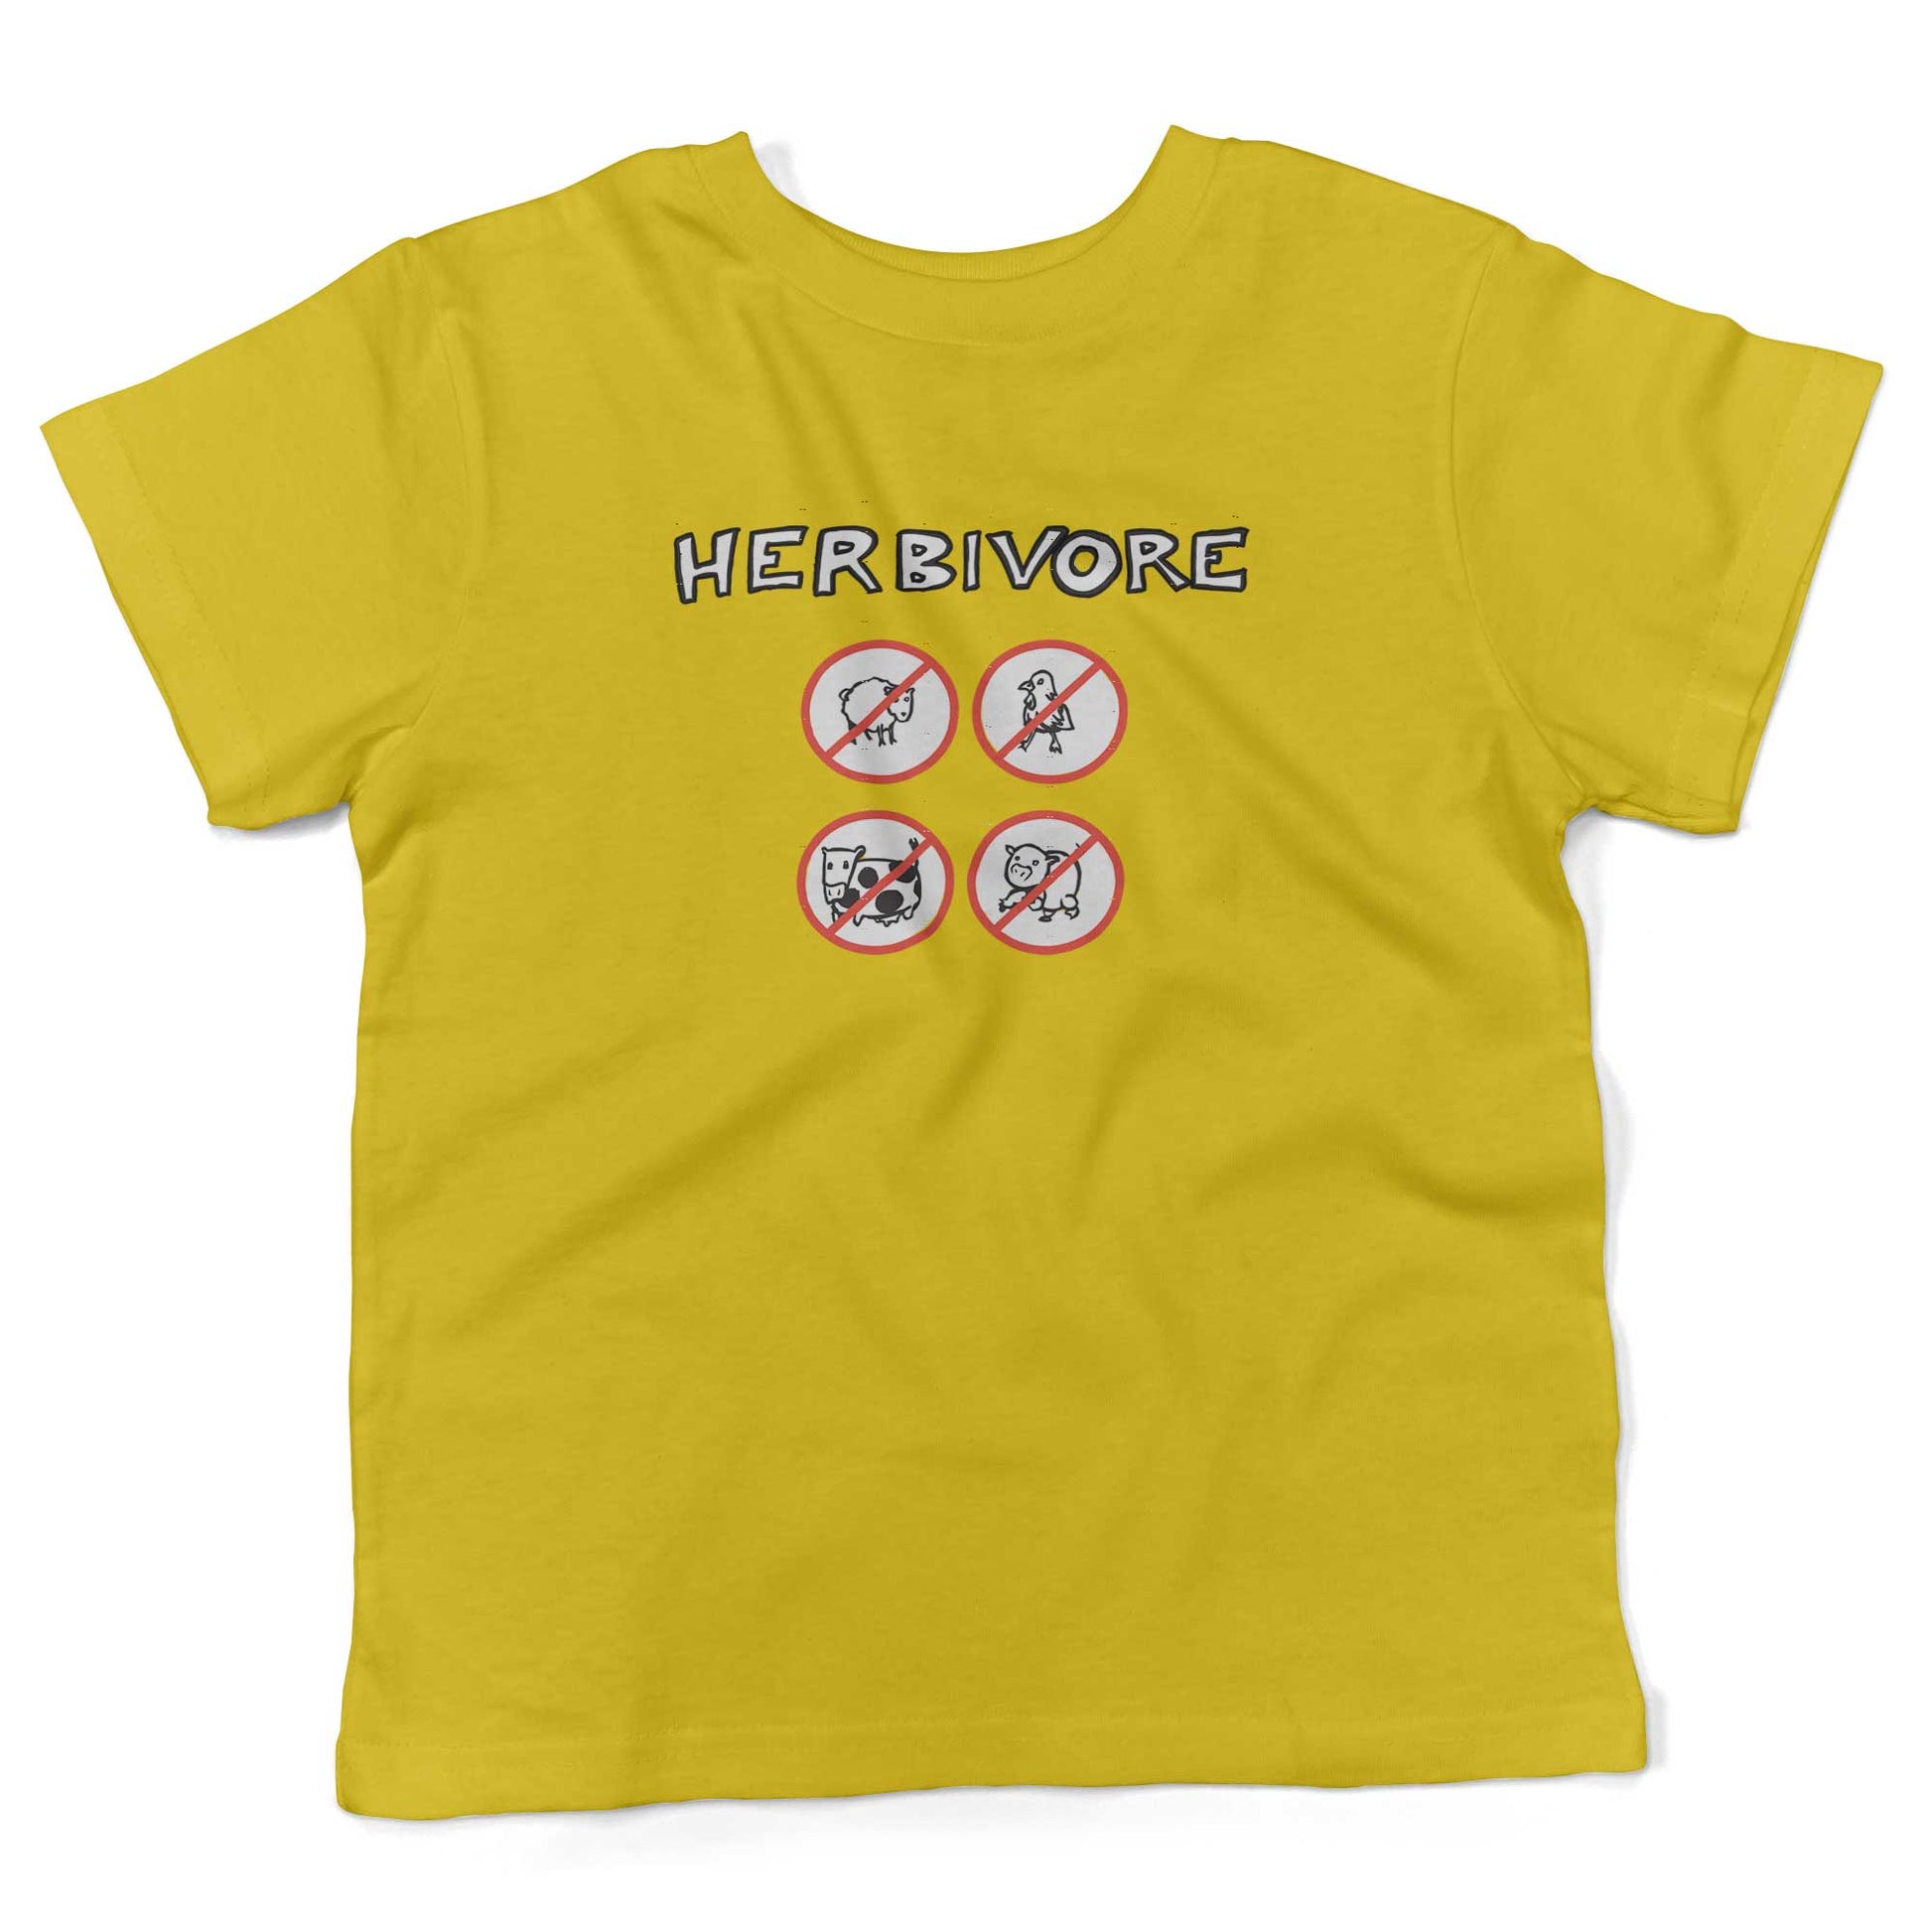 Herbivore Toddler Shirt-Sunshine Yellow-2T